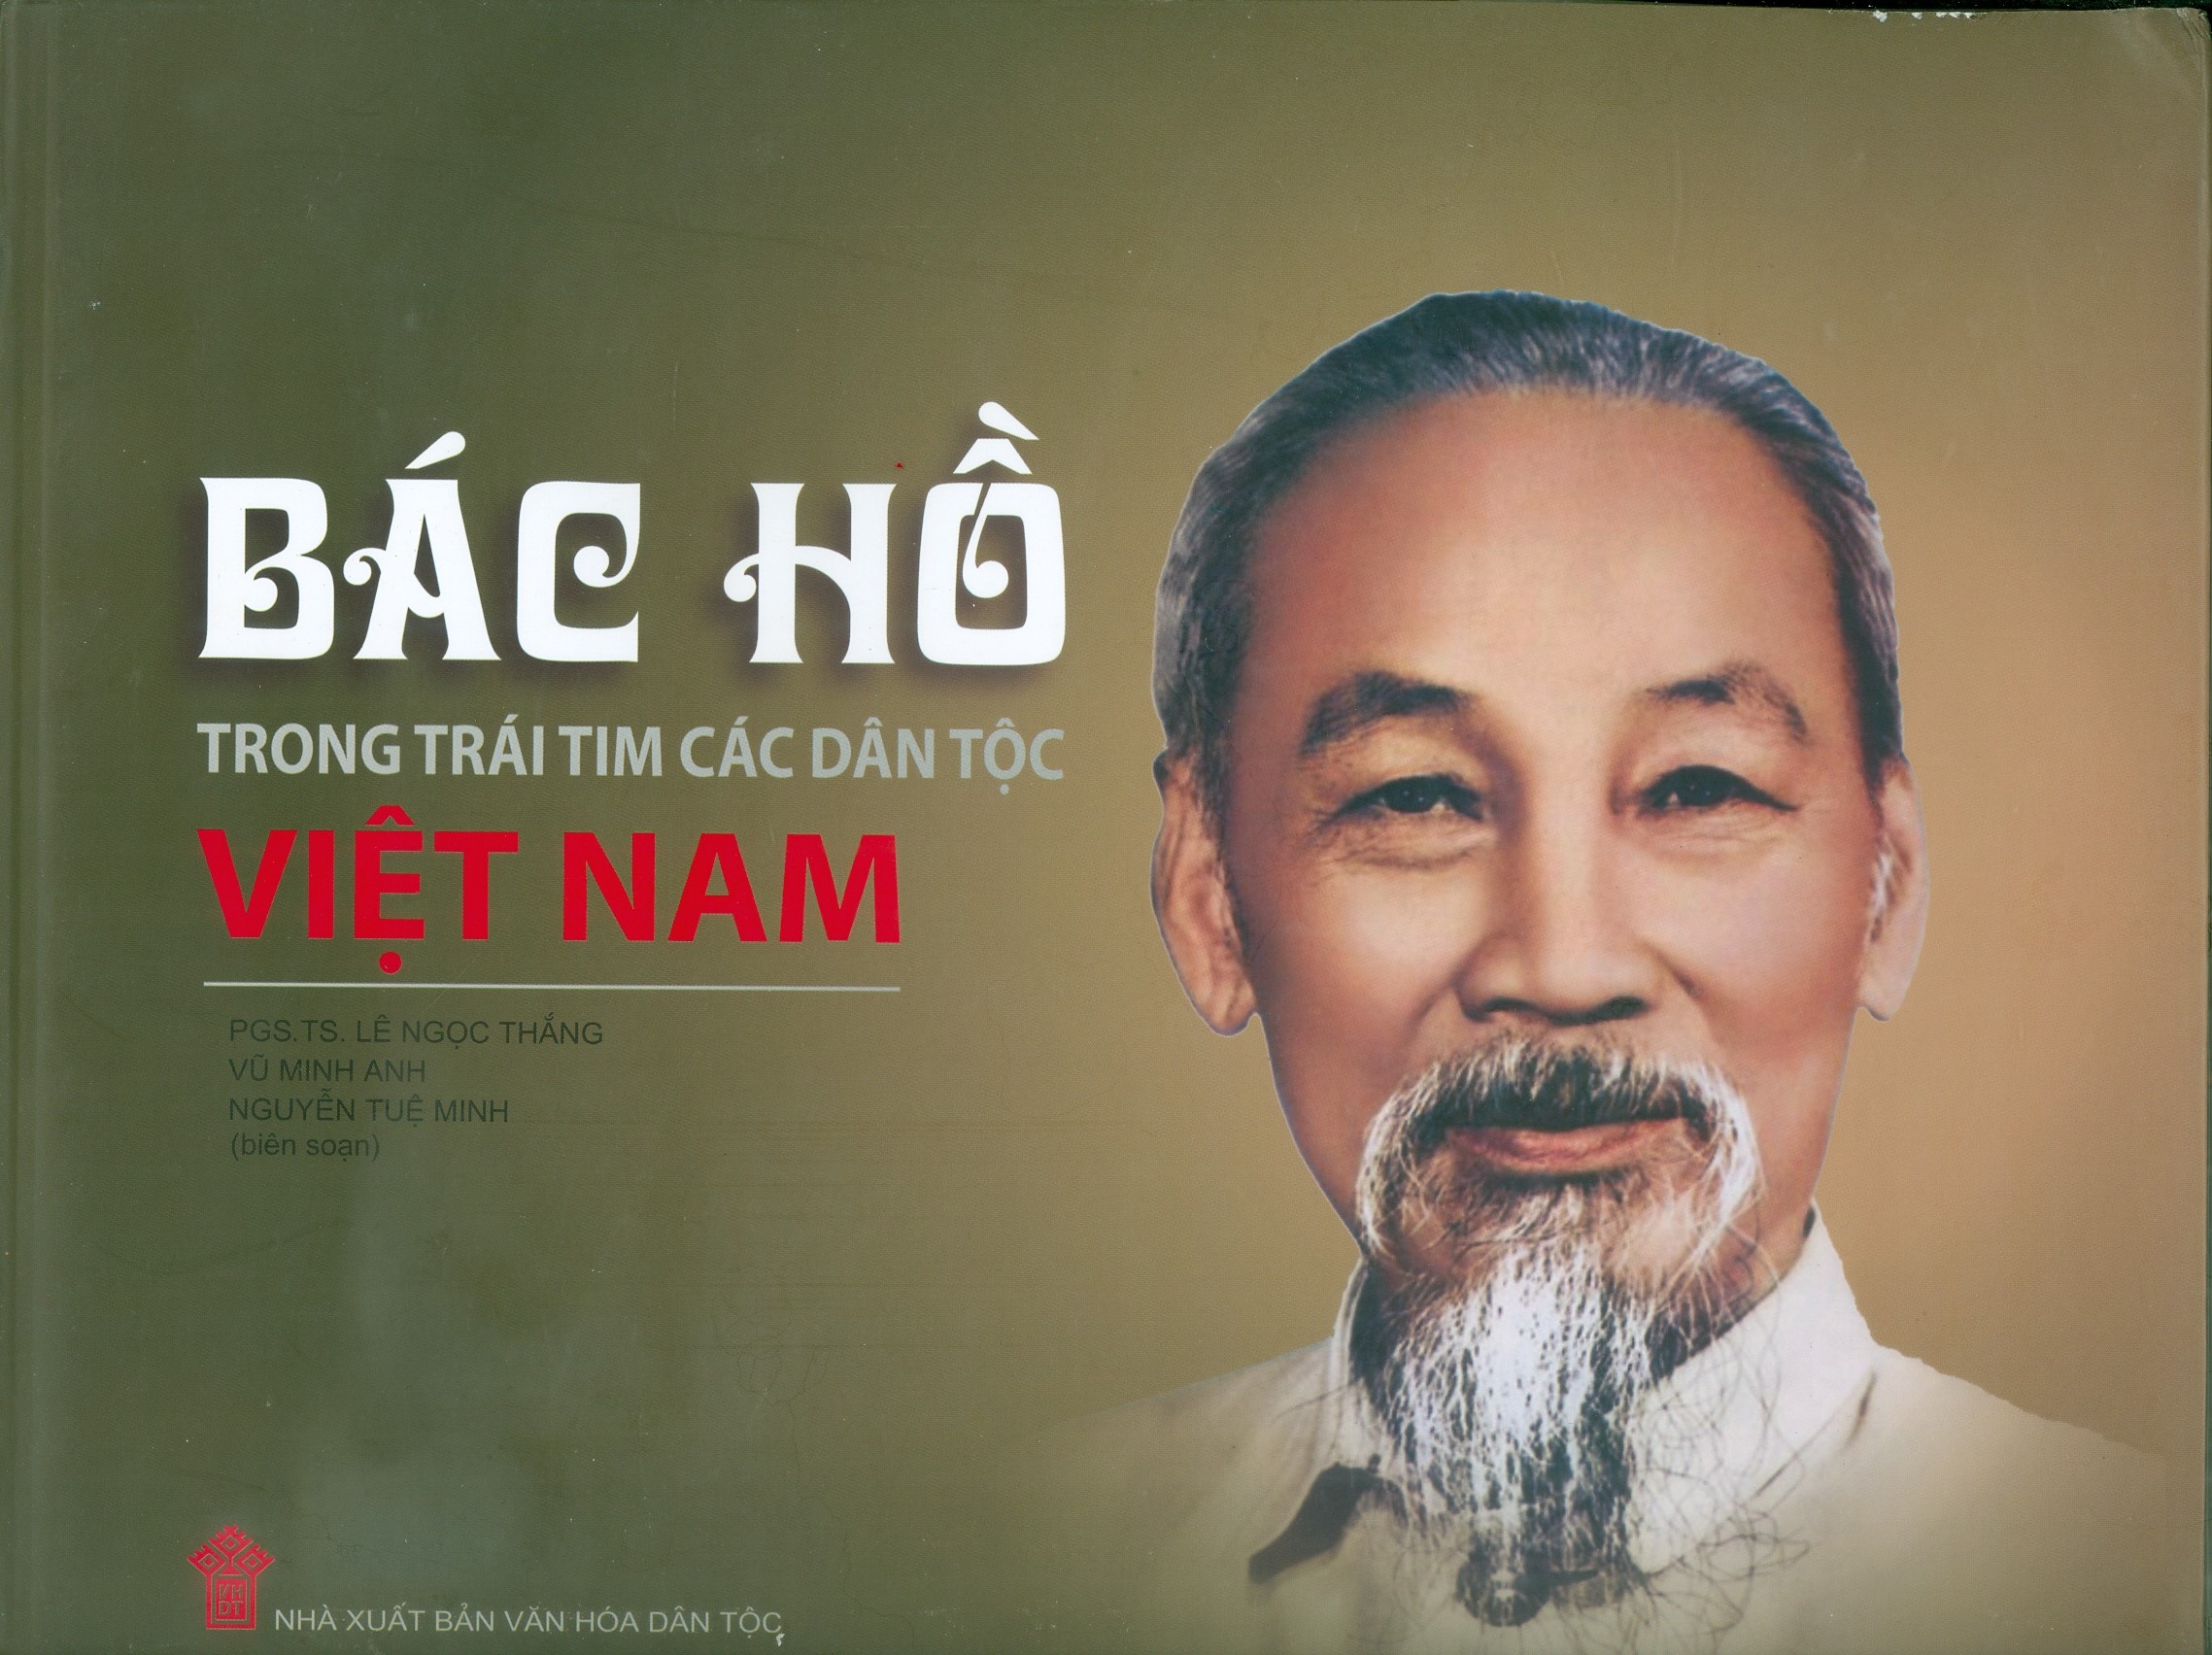 Bác Hồ trong trái tim các dân tộc Việt Nam